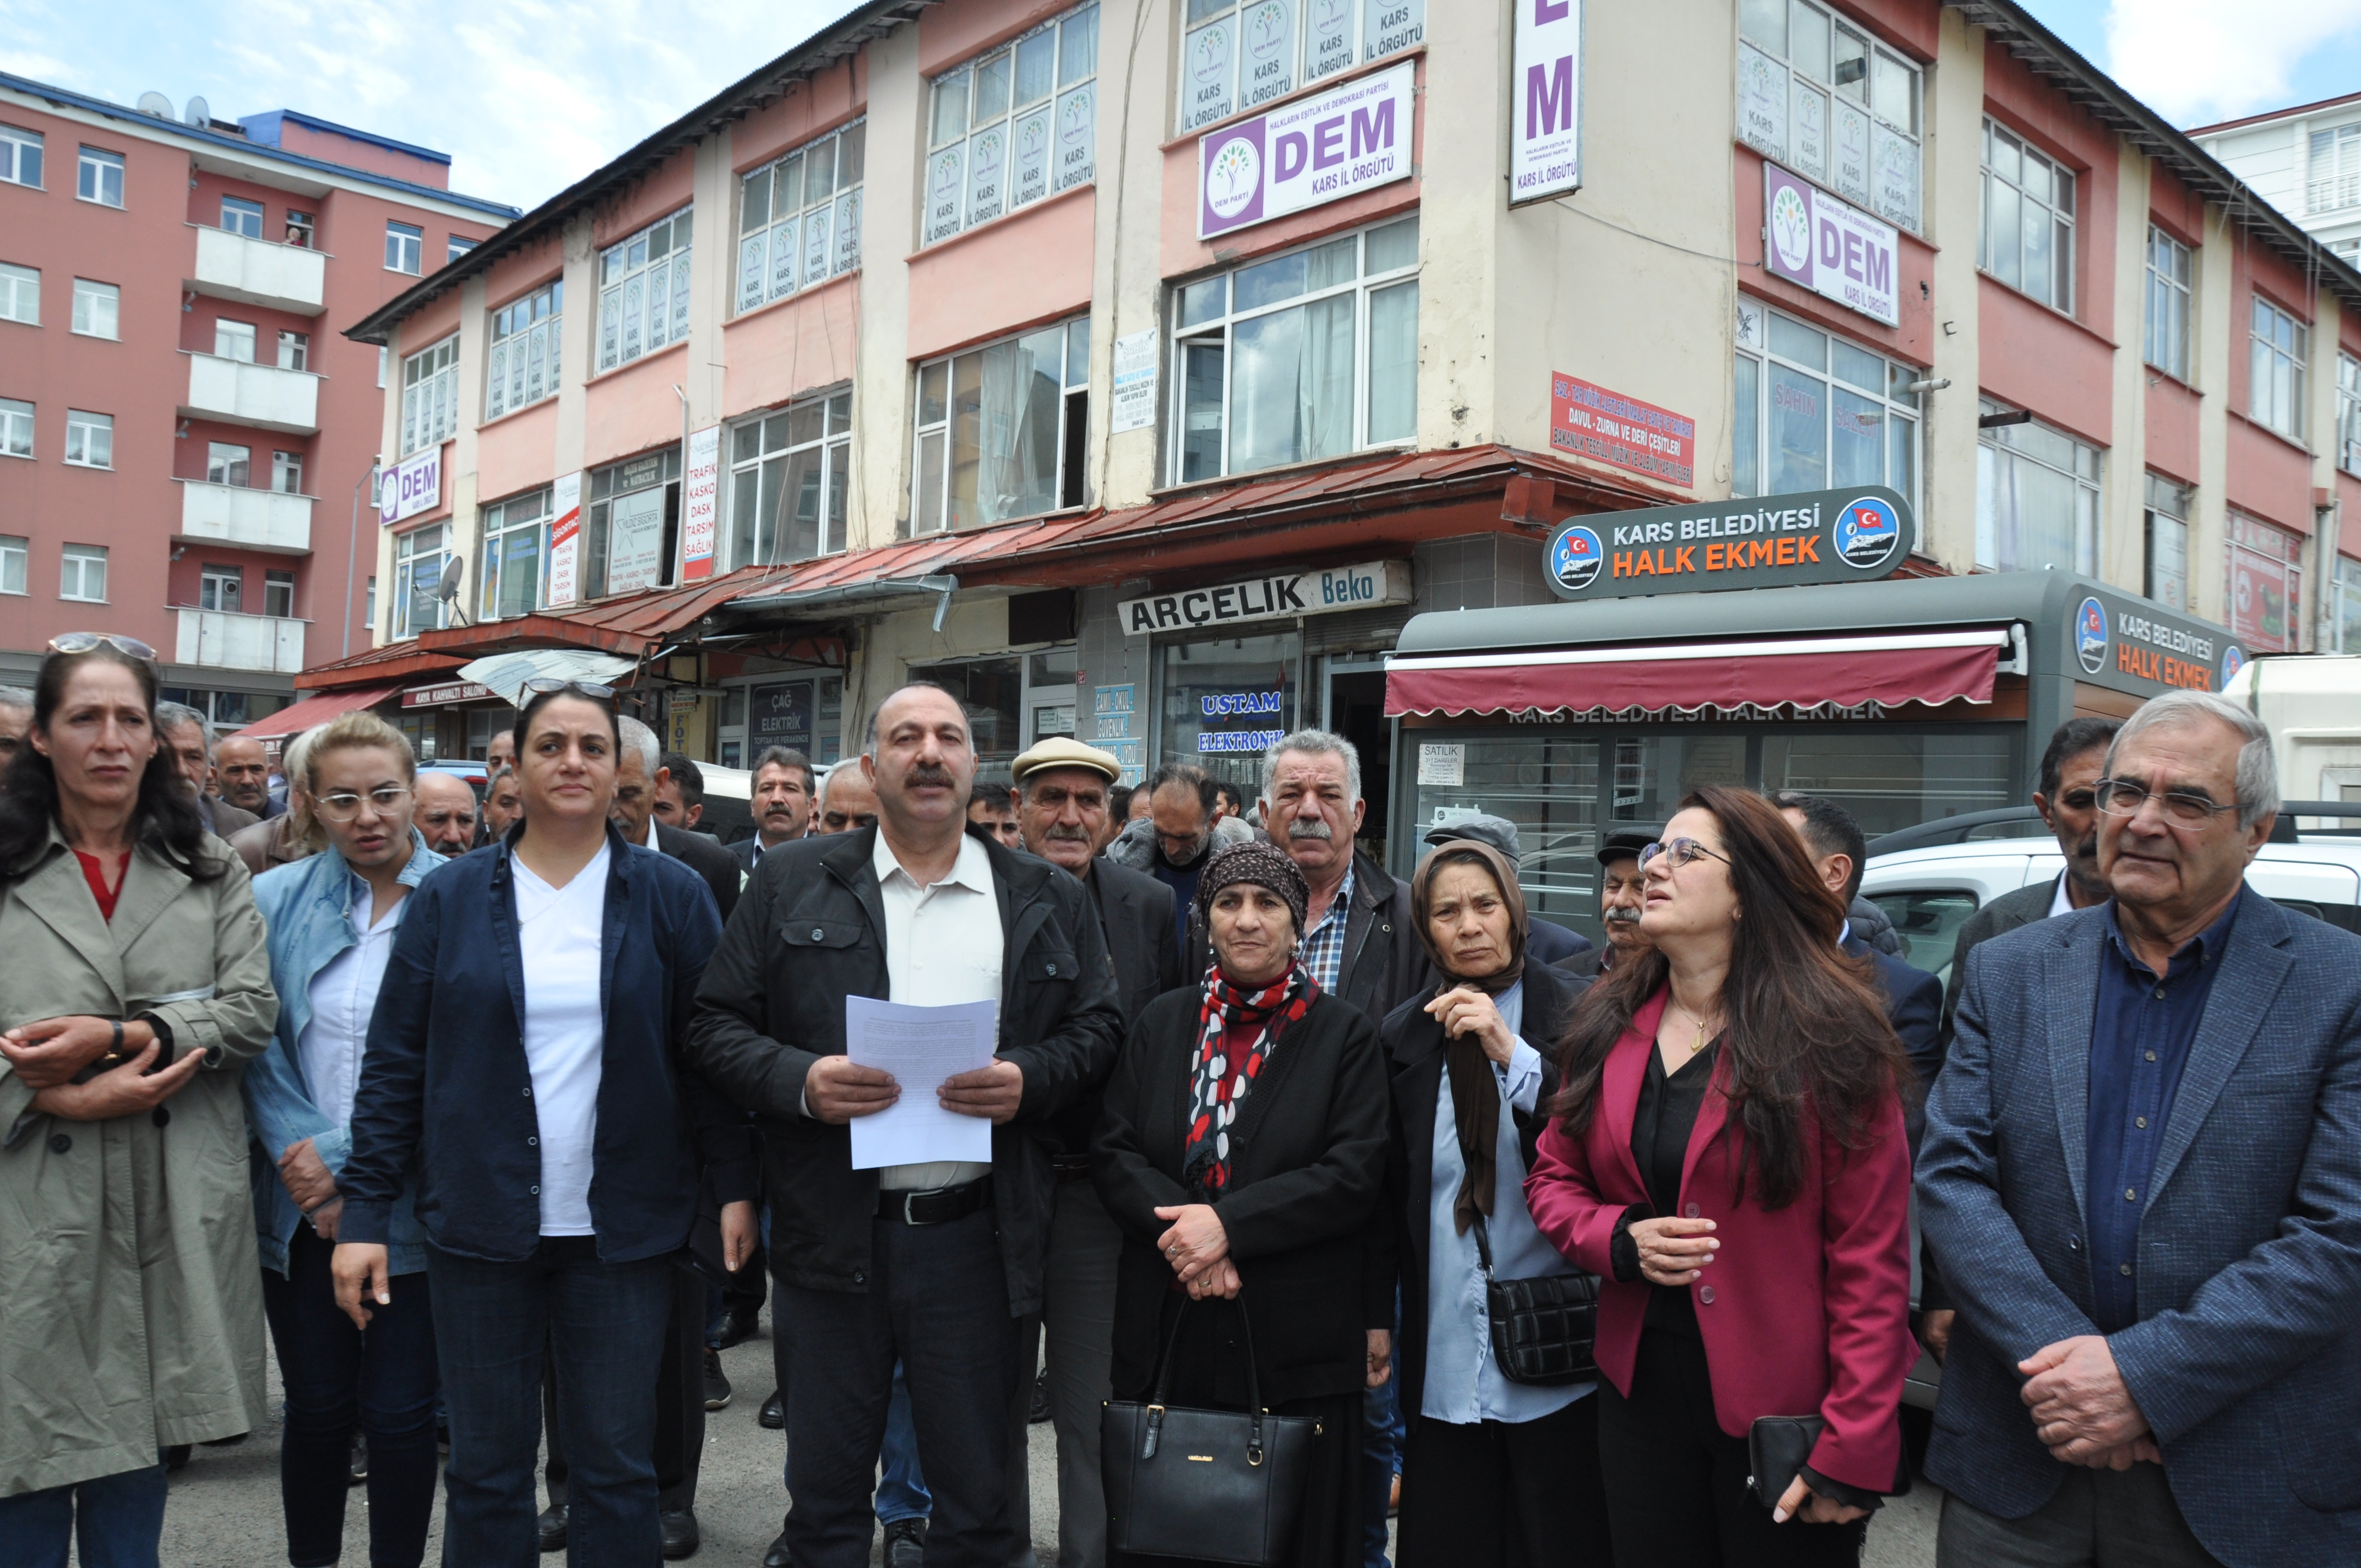 Kars’ta DEM partililer, Kobani Davası kararına tepki gösterdi